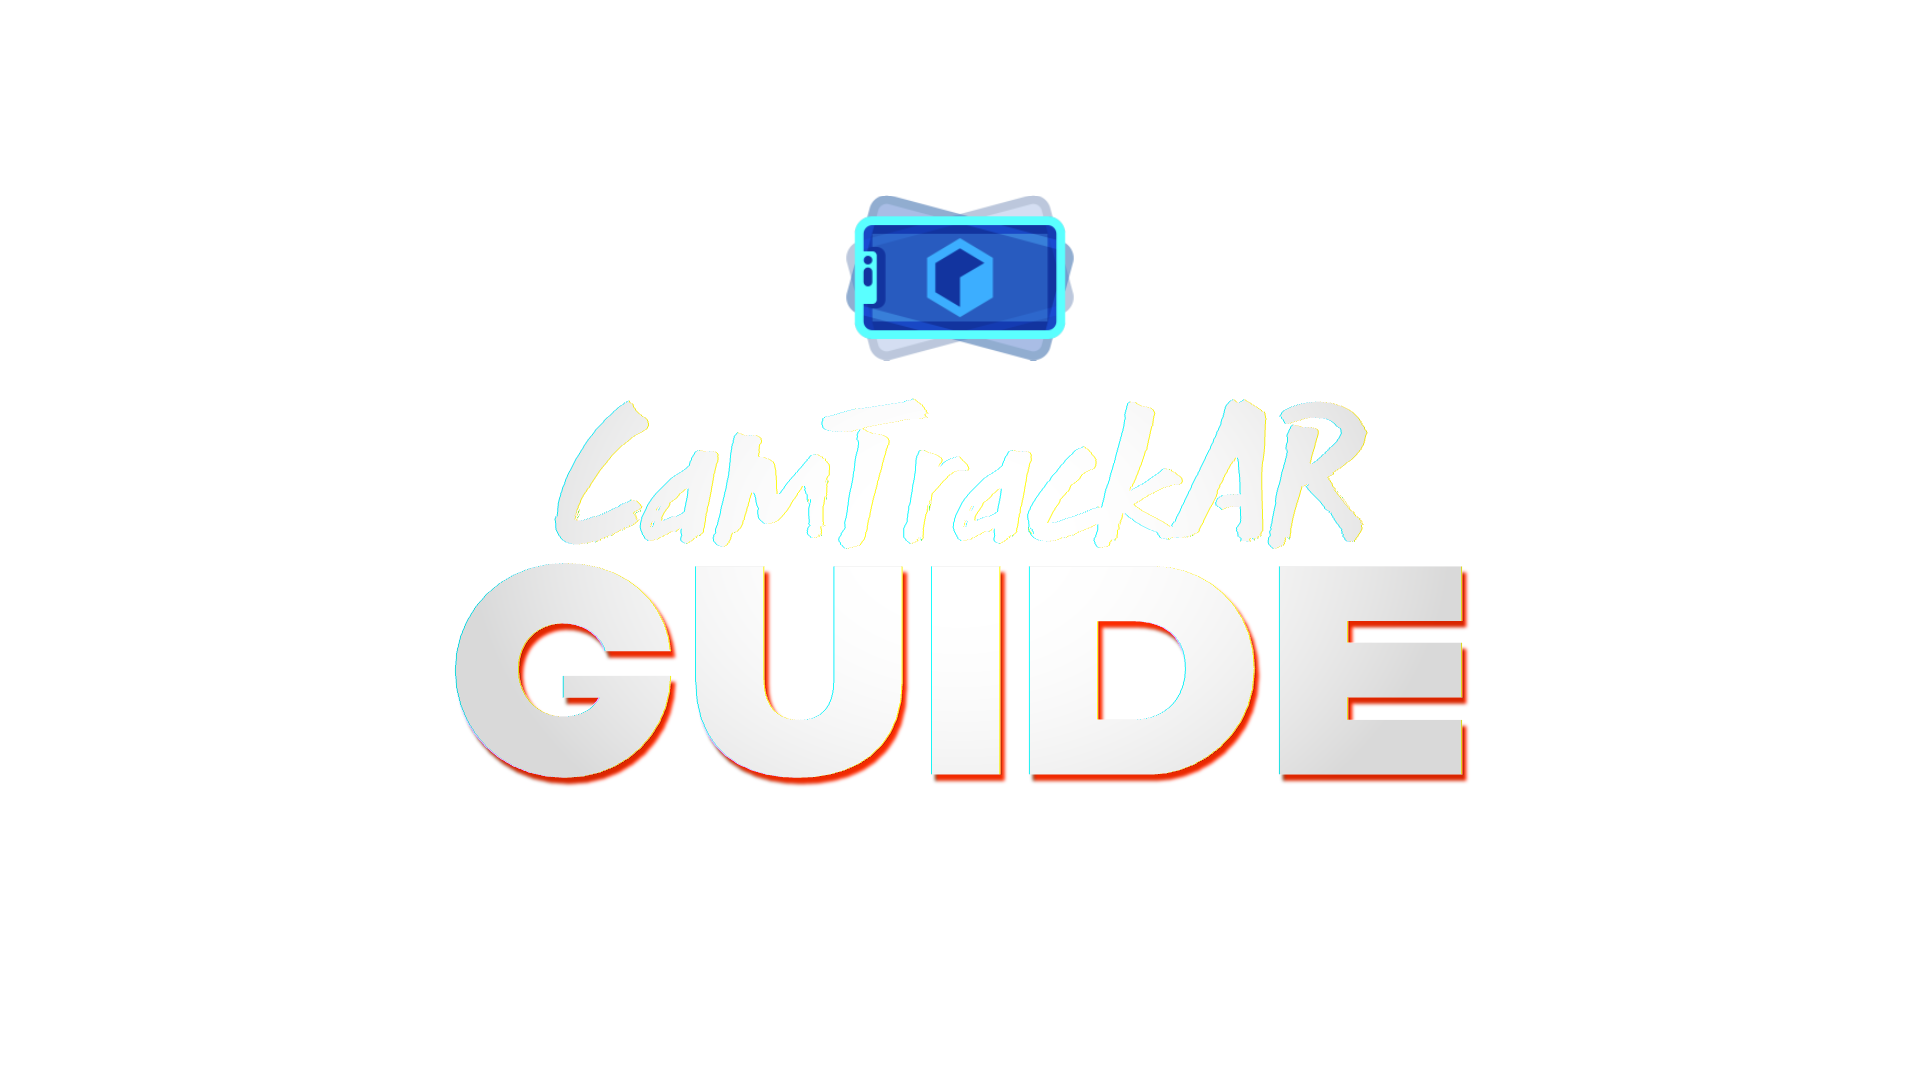 CamTrackAR Guide logo